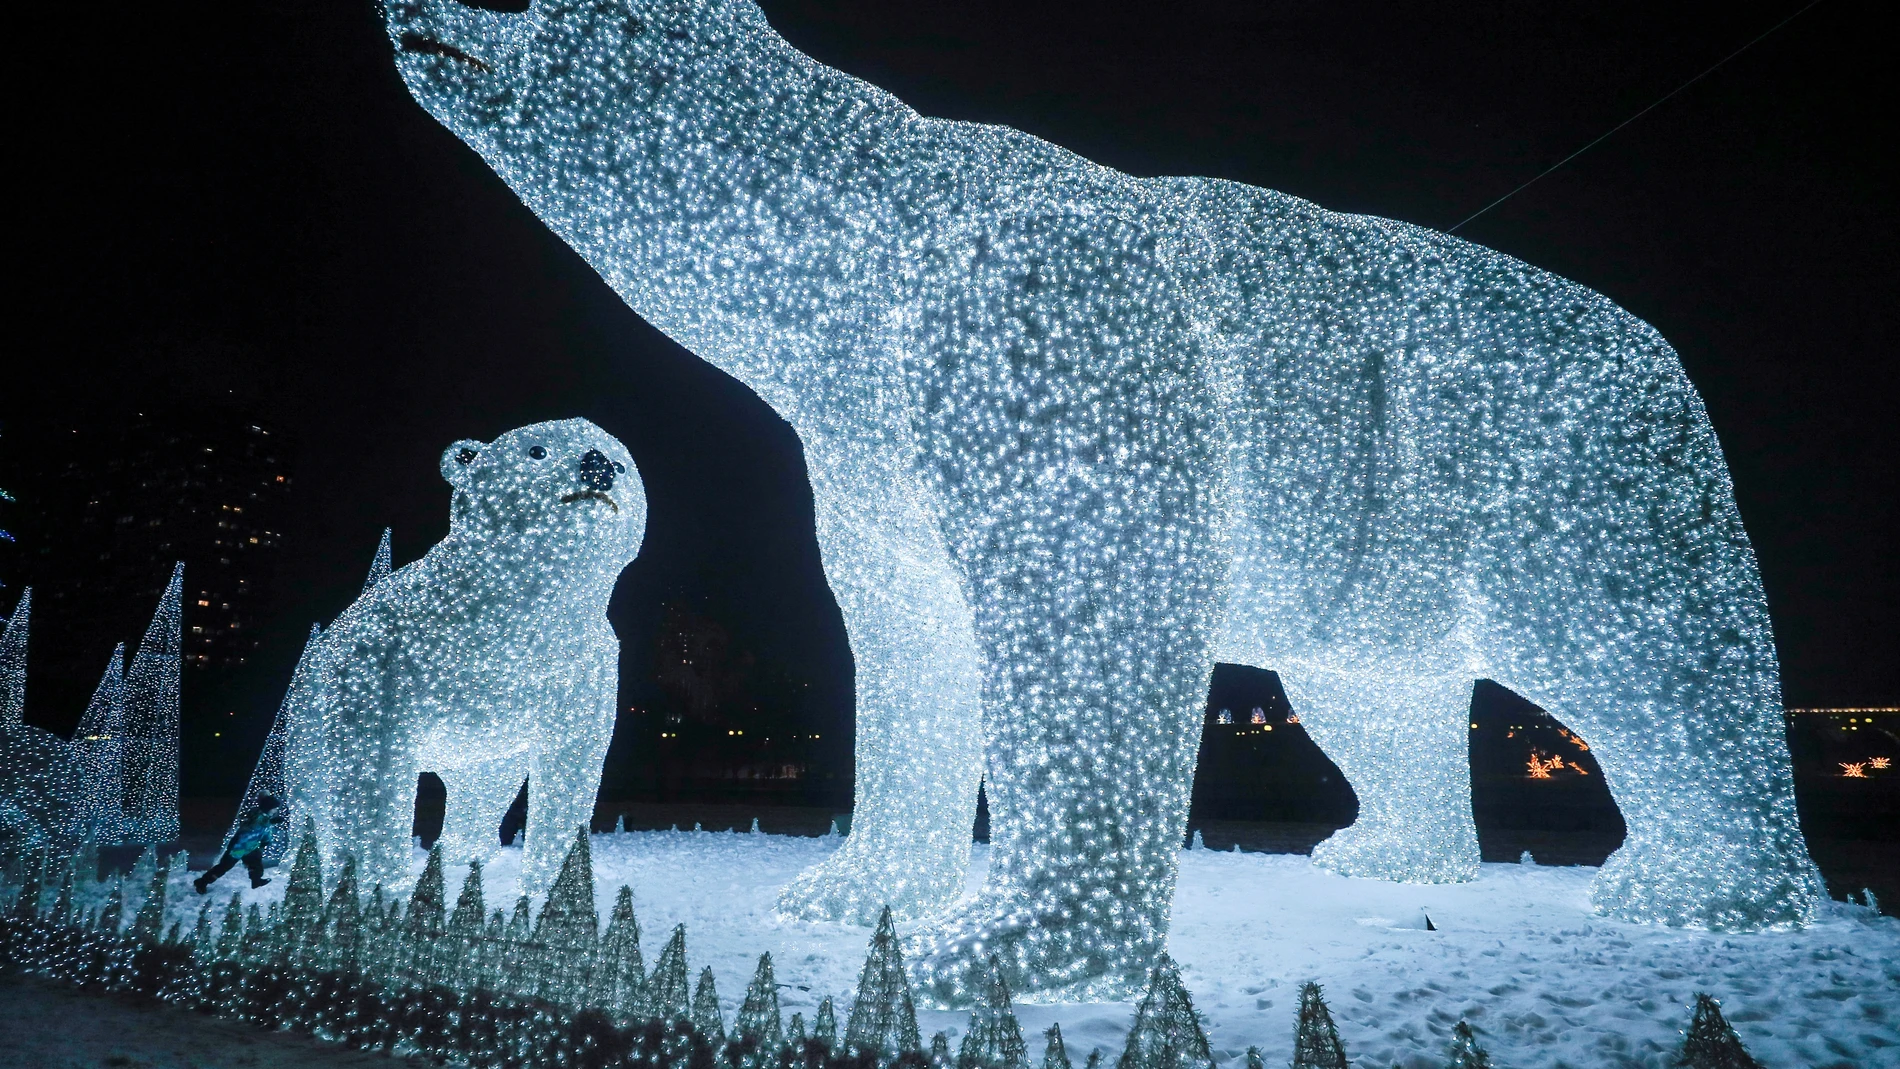 Escultura navideña de osos polares en Moscú, Rusia, en pleno avance de la pandemia